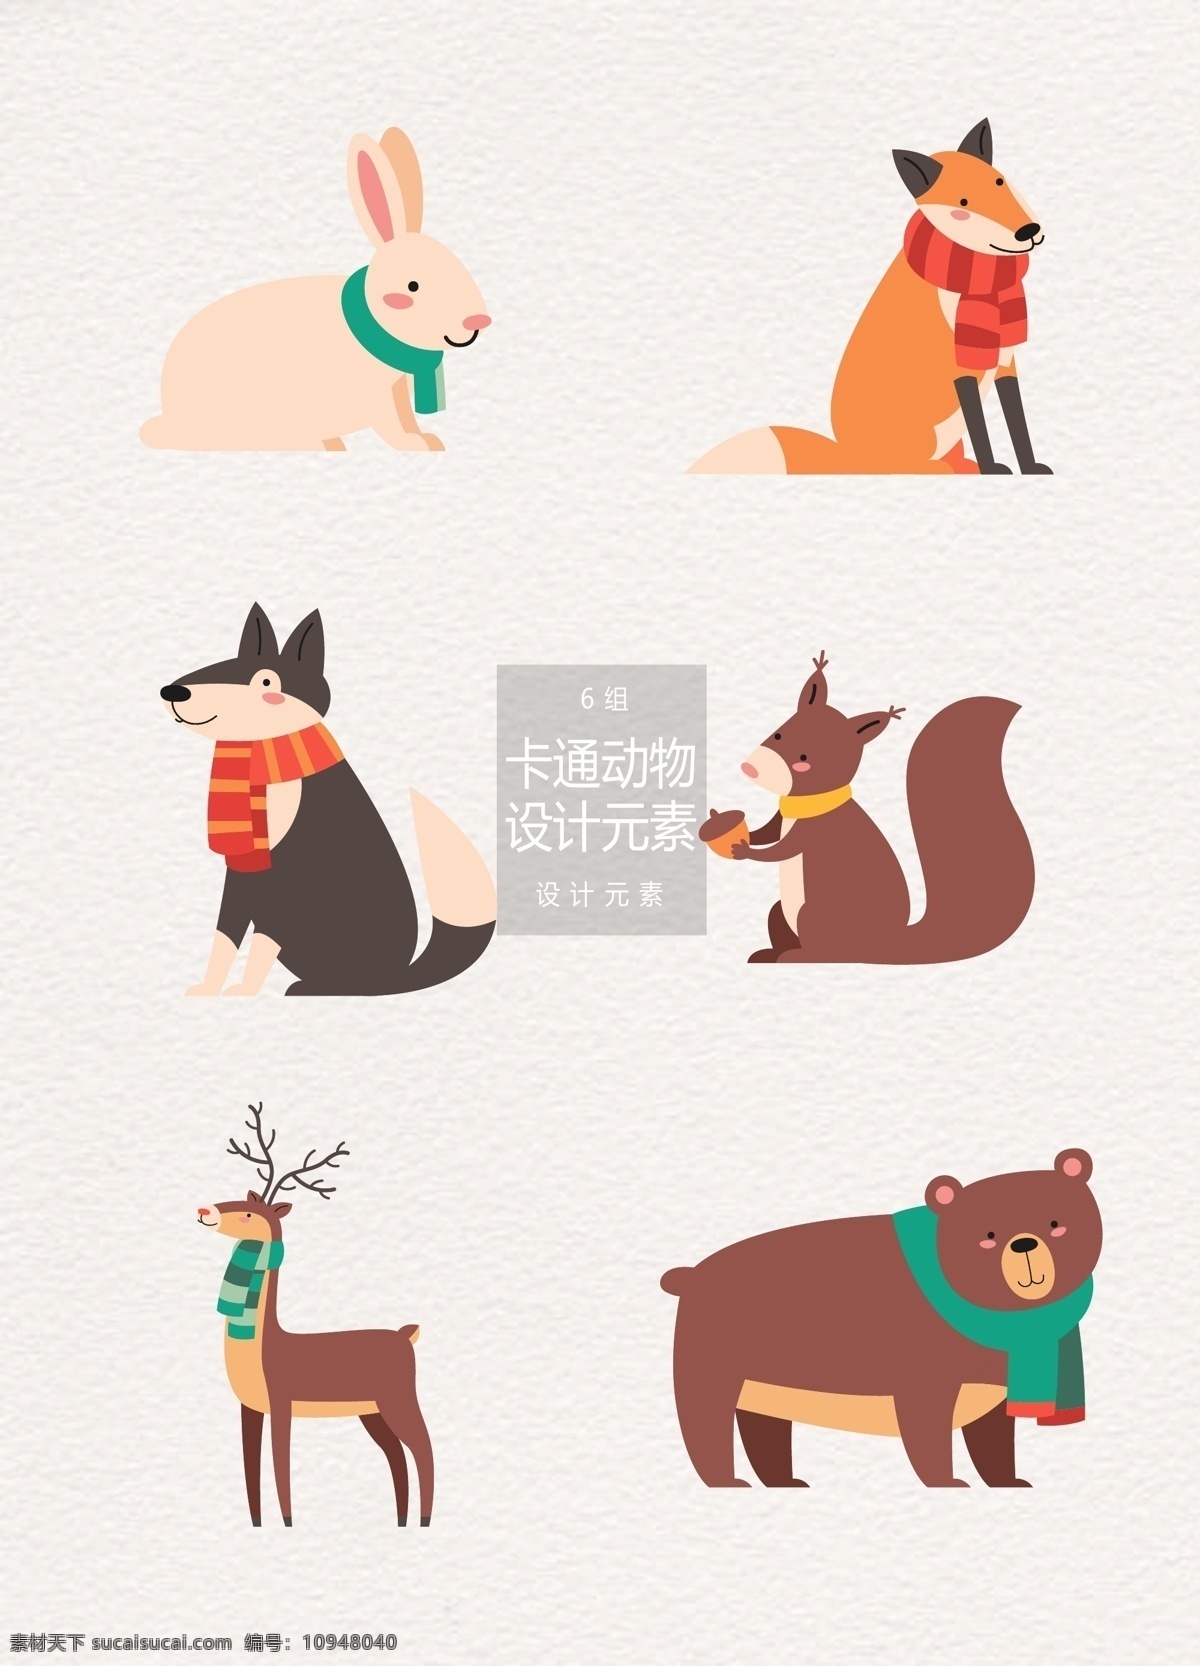 冬季 卡通 动物 矢量 元素 卡通动物 冬天 兔子 设计元素 狐狸 狼 松鼠 麋鹿 驯鹿 狗熊